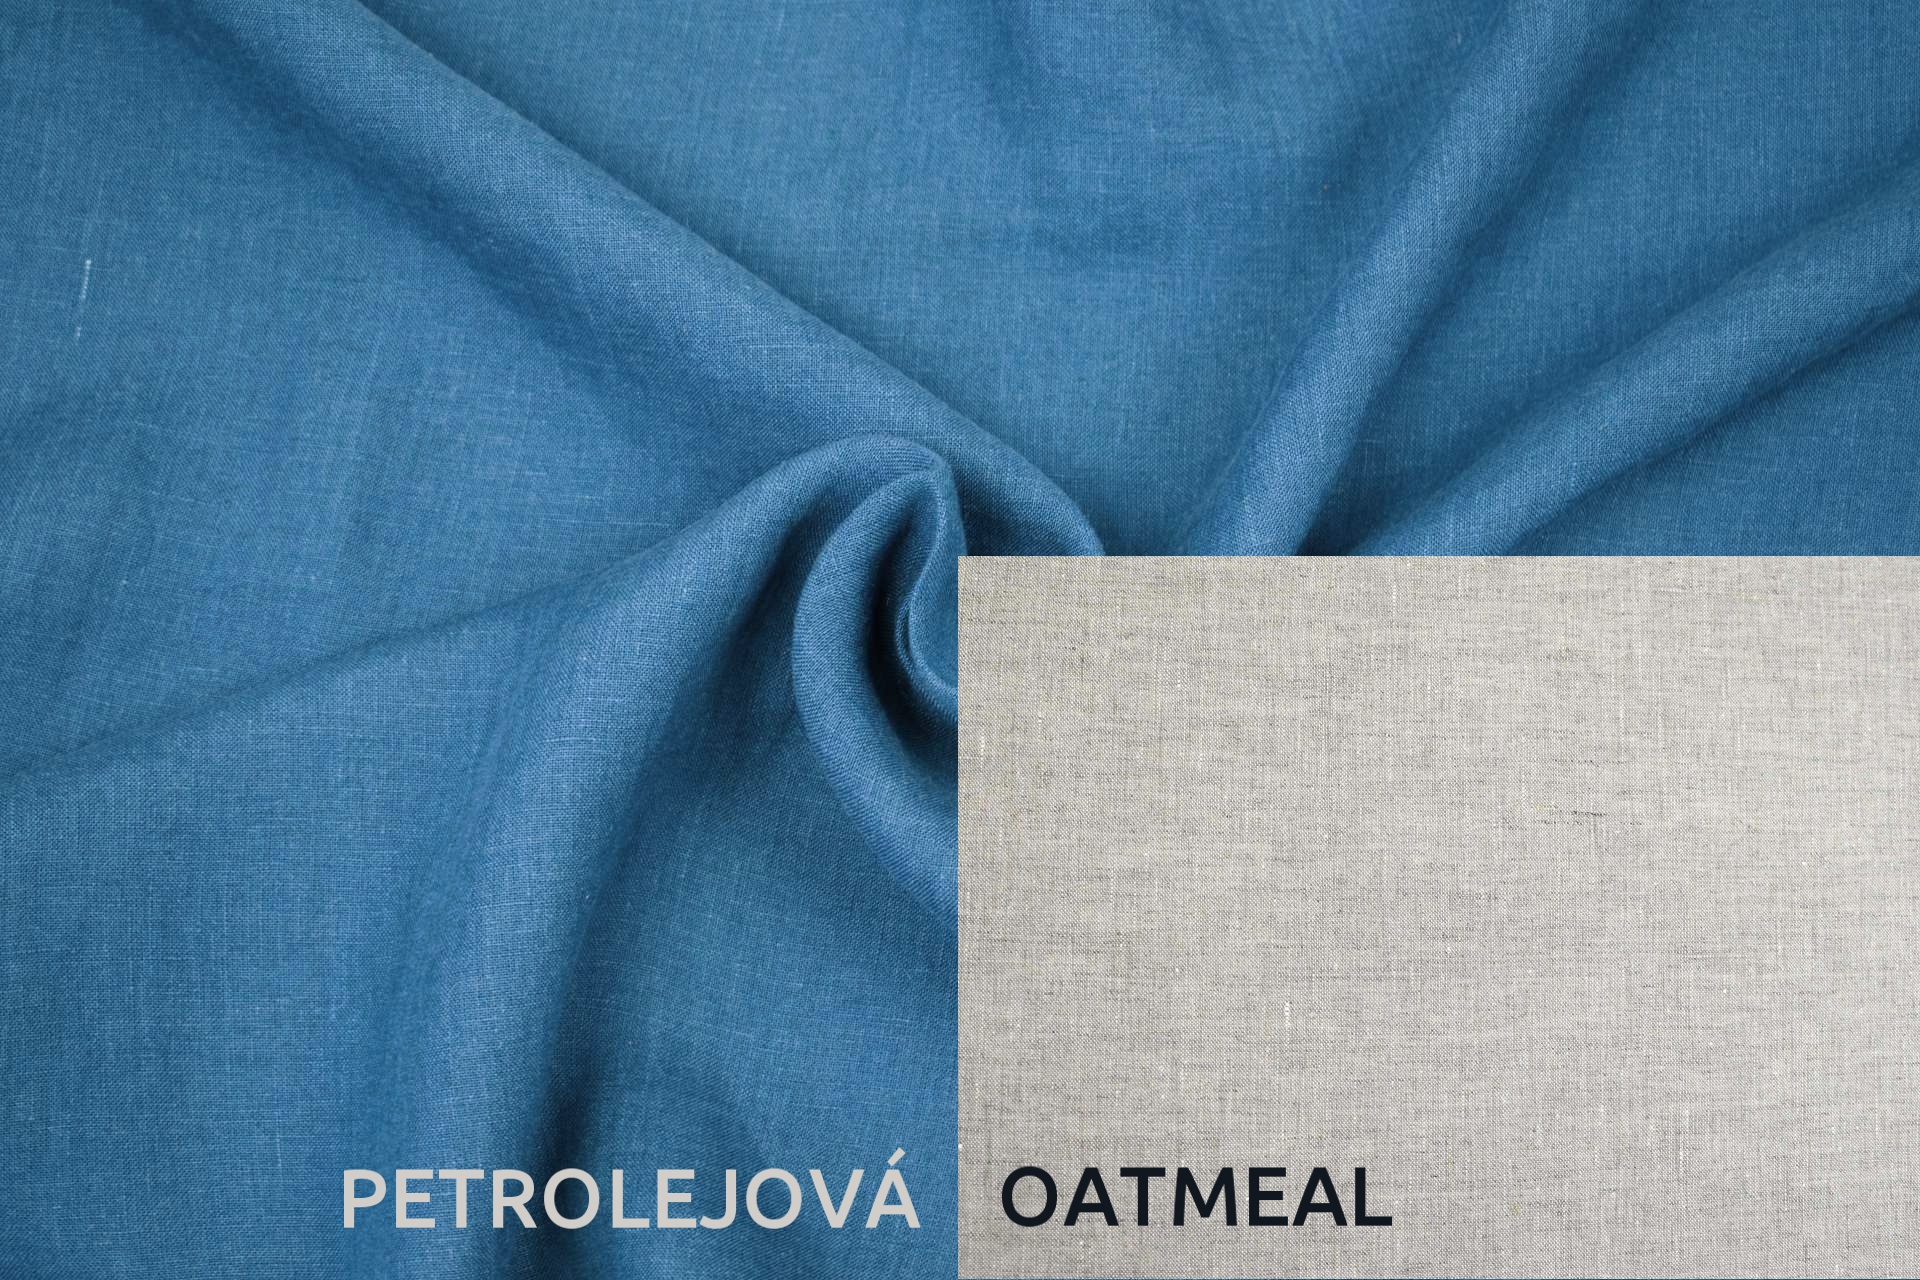 Lněná deka s prošitím petrolejová, oatmeal